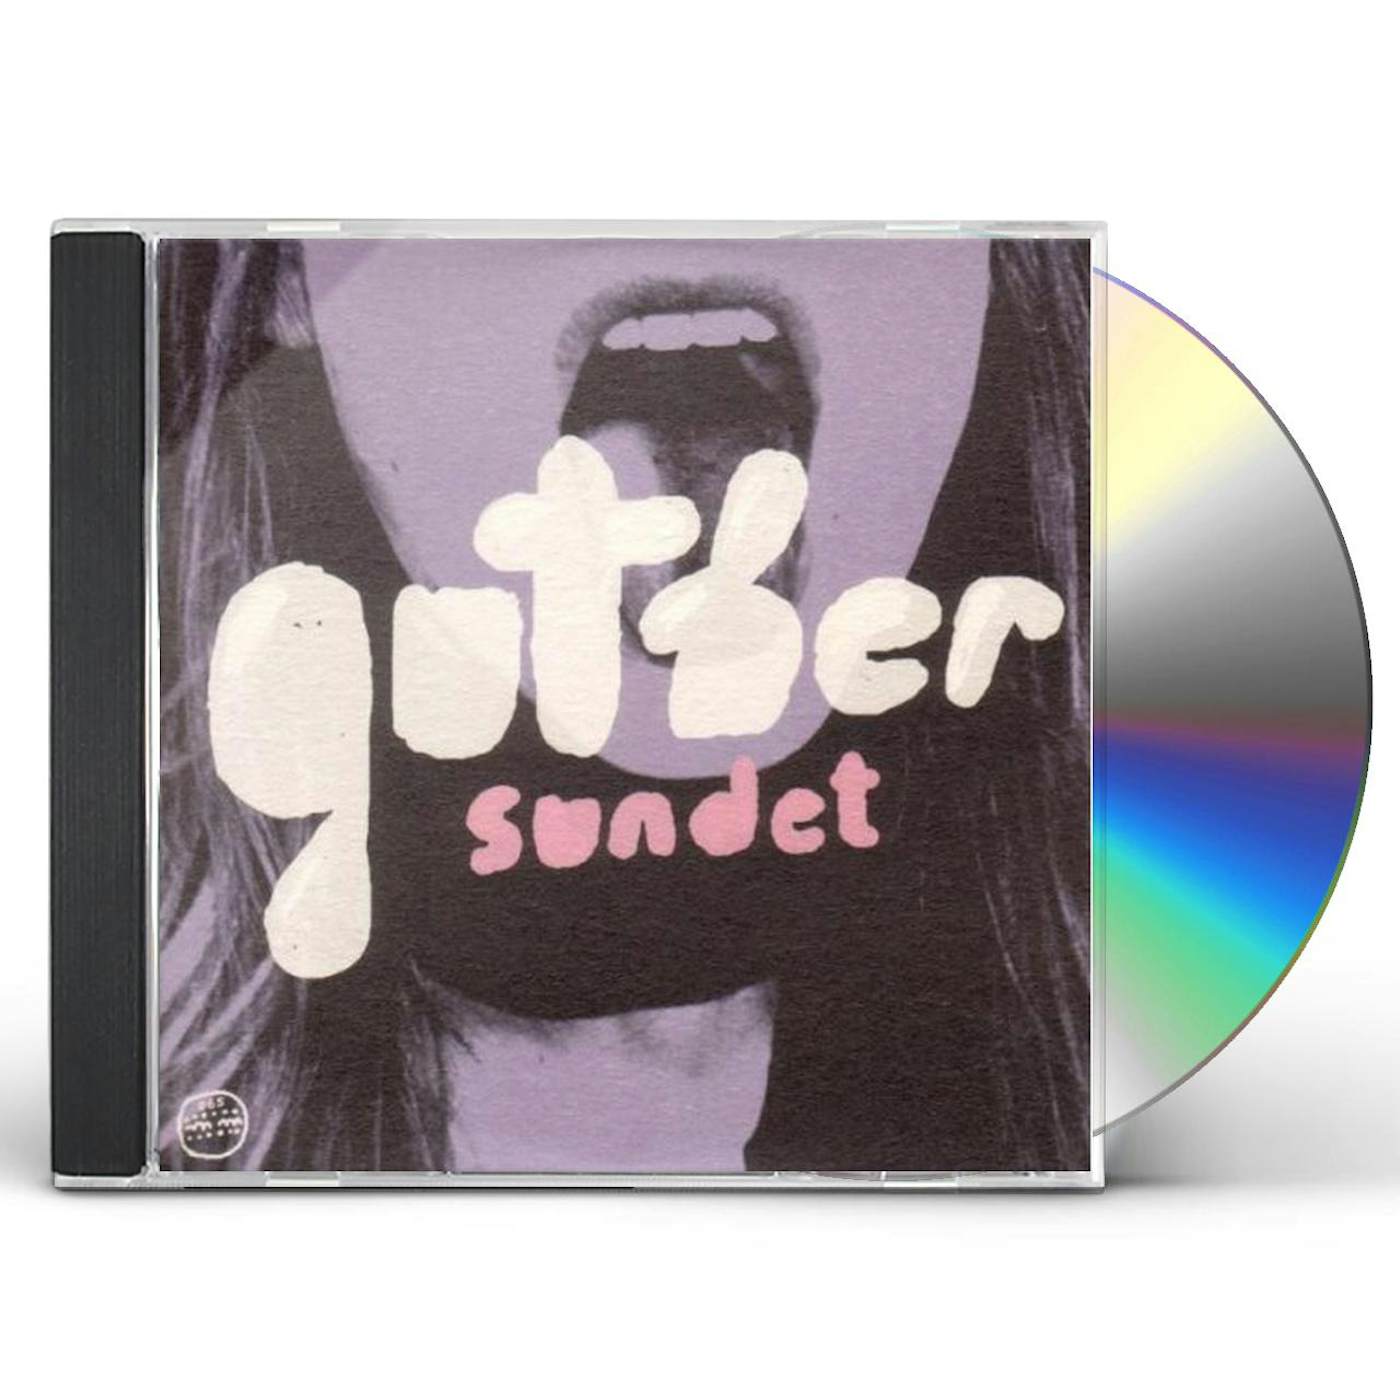 Guther SUNDET CD